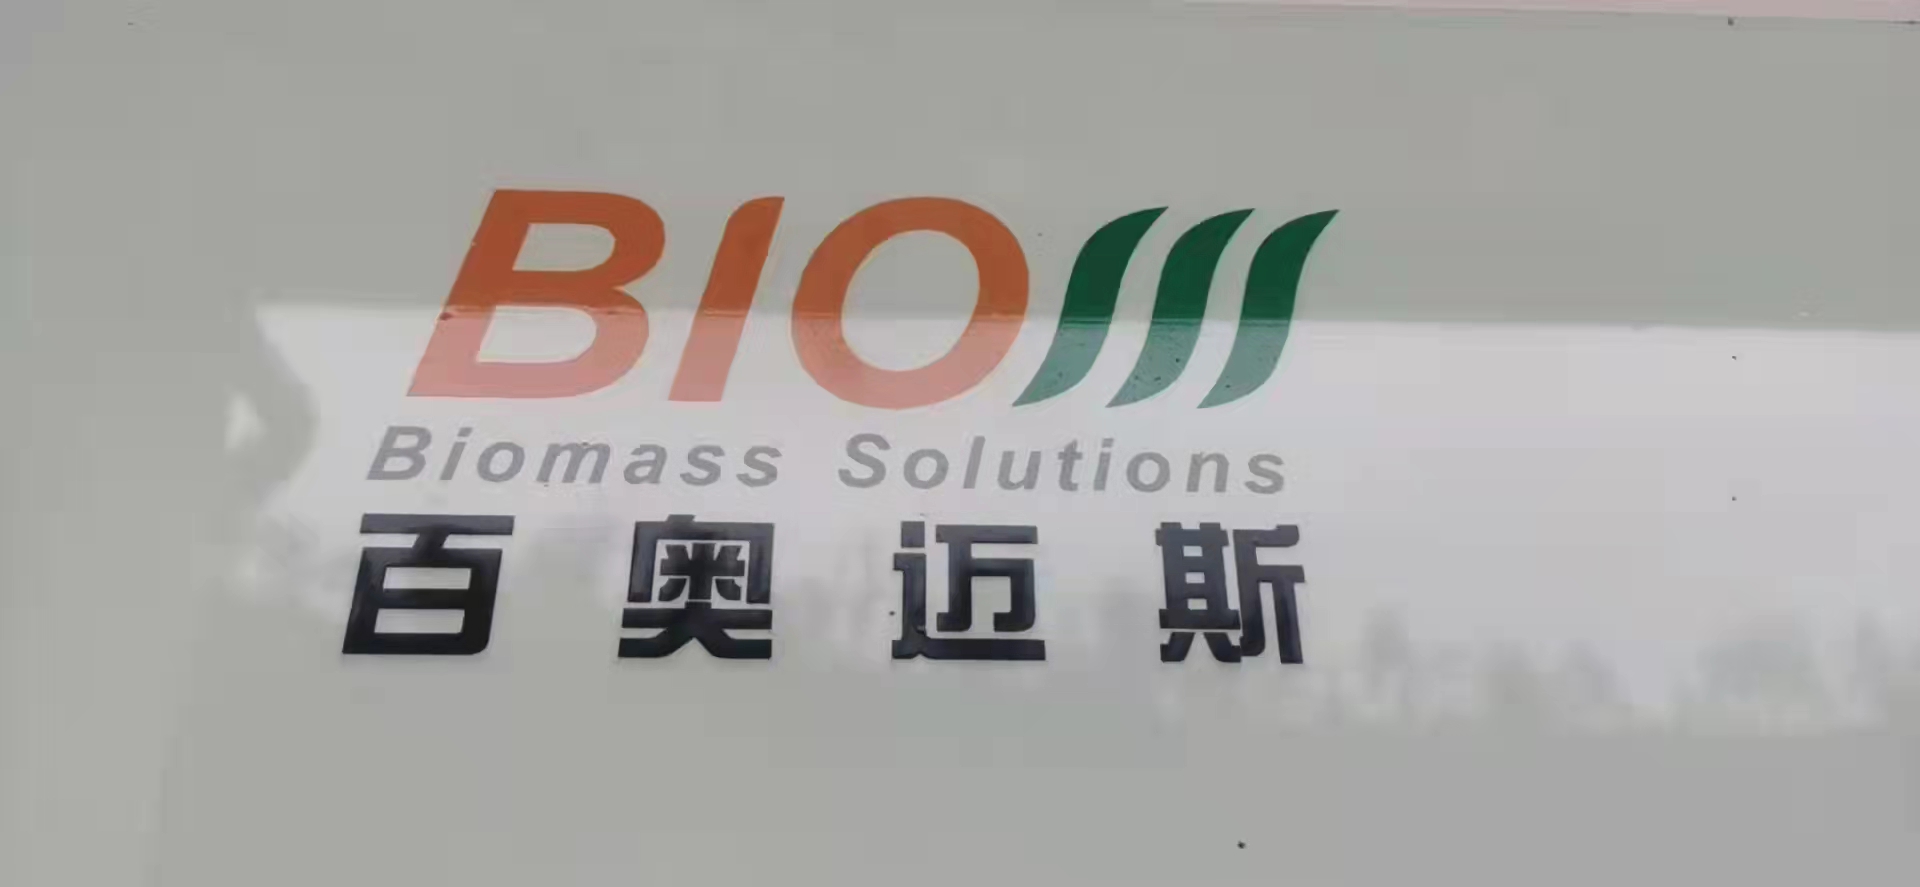 浙江百奥迈斯生物科技股份有限公司天台分公司公司环境展示